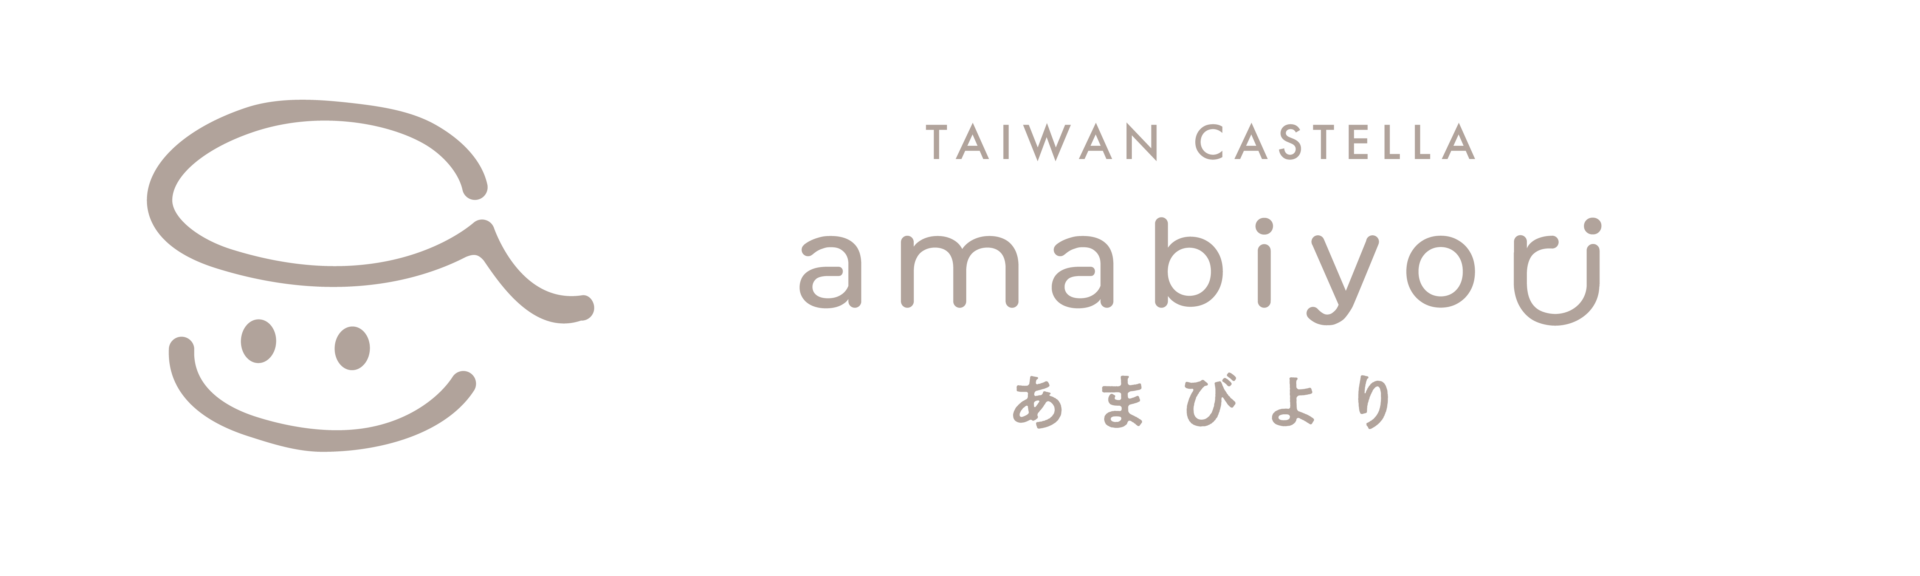 amabiyori(あまびより) – 花巻市の台湾カステラ店